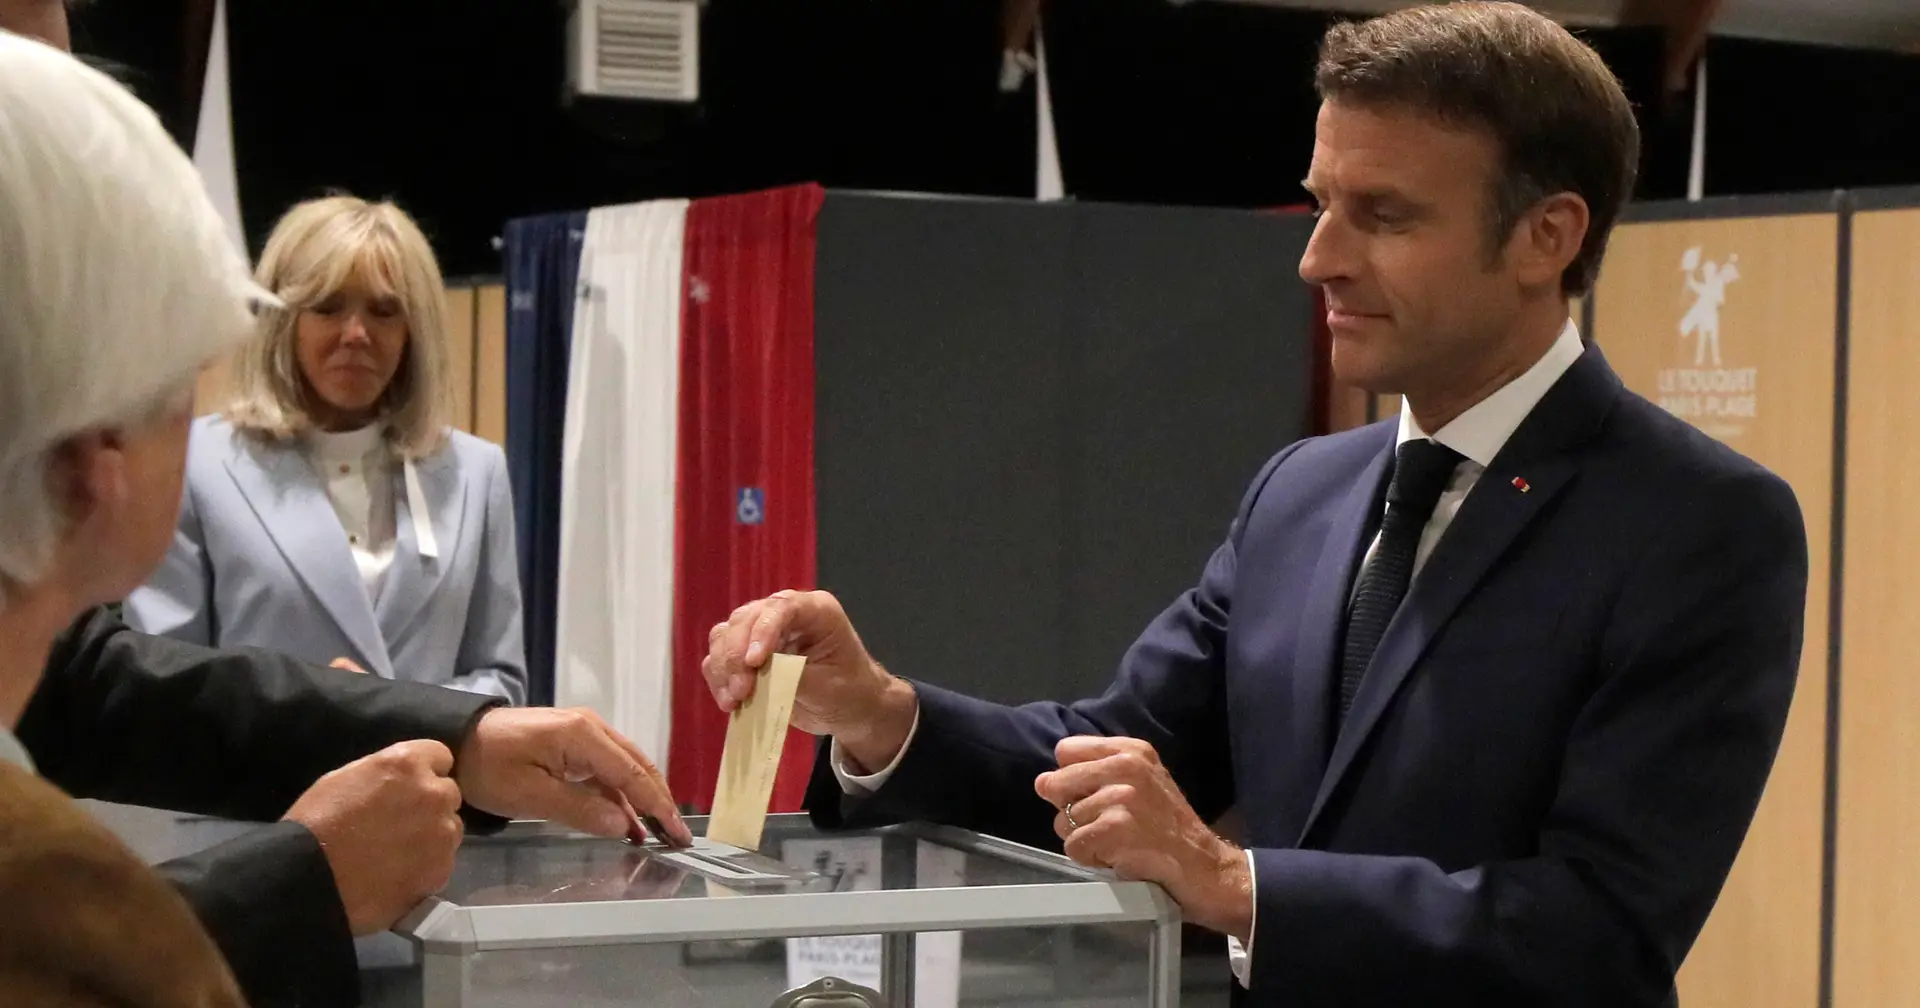 Eleições em França: votaram 38% dos eleitores a meio da tarde, sem atingir recorde de abstenção